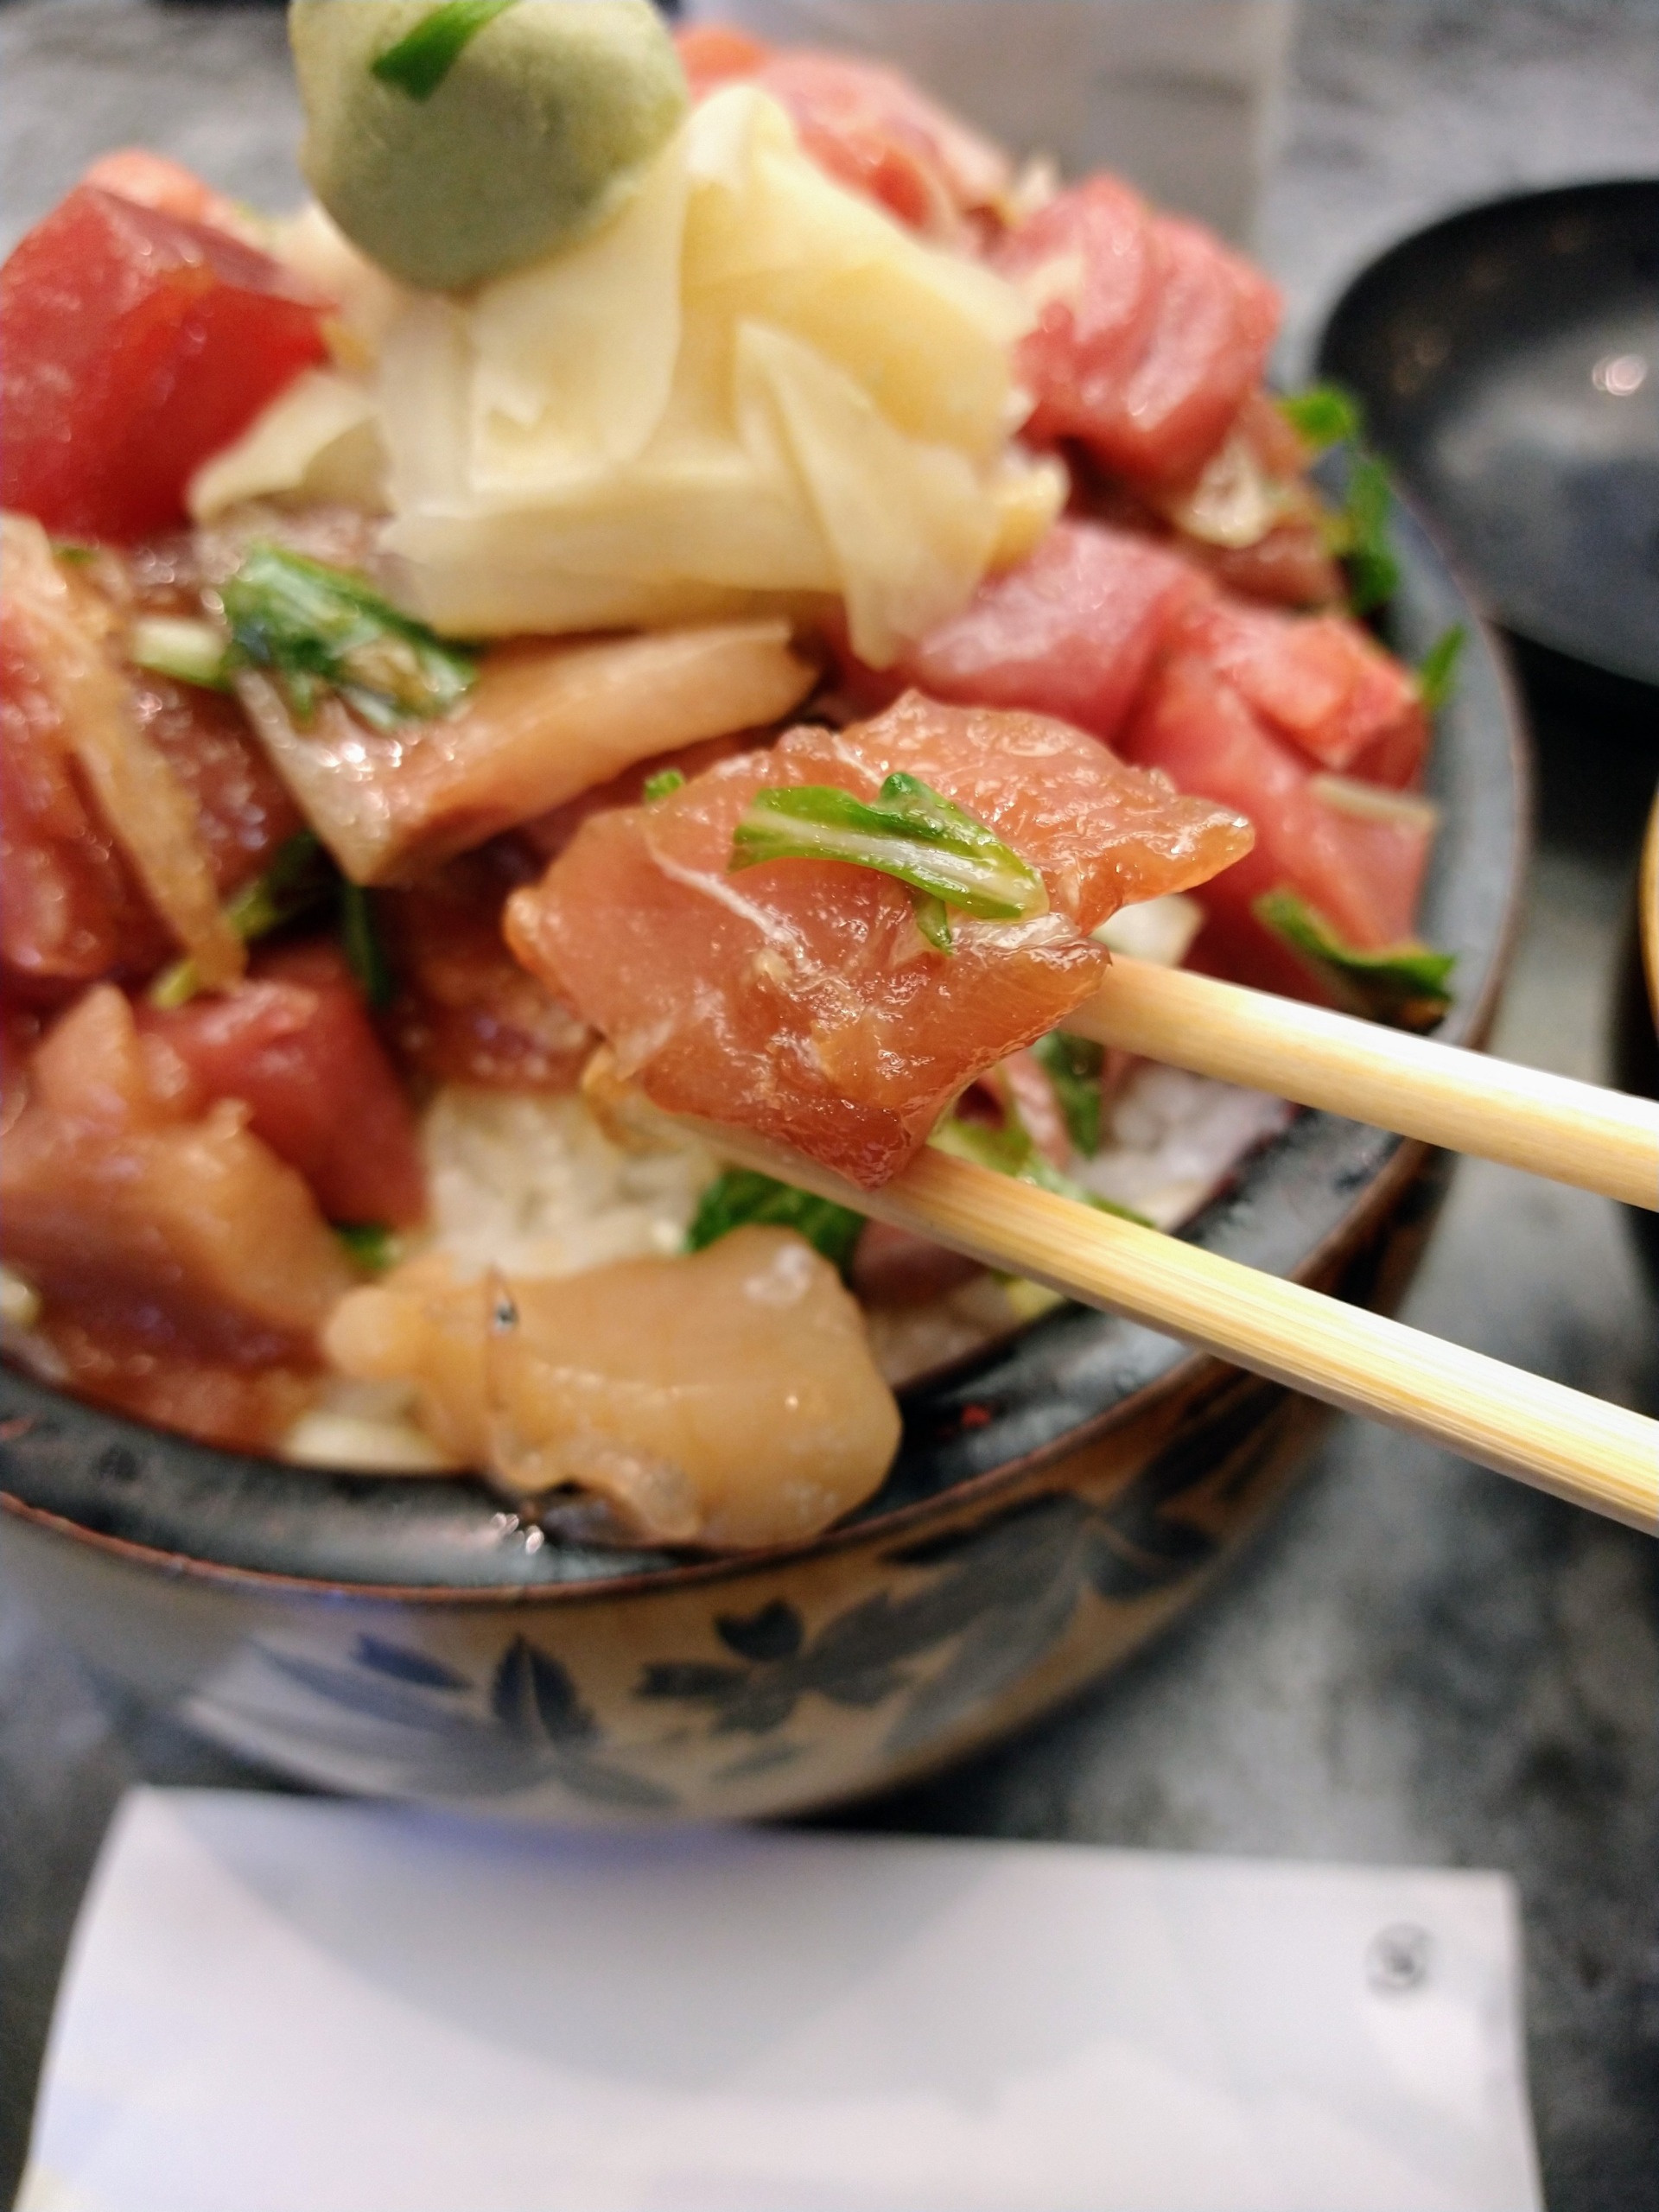 mikore-sushi-cuisine-15